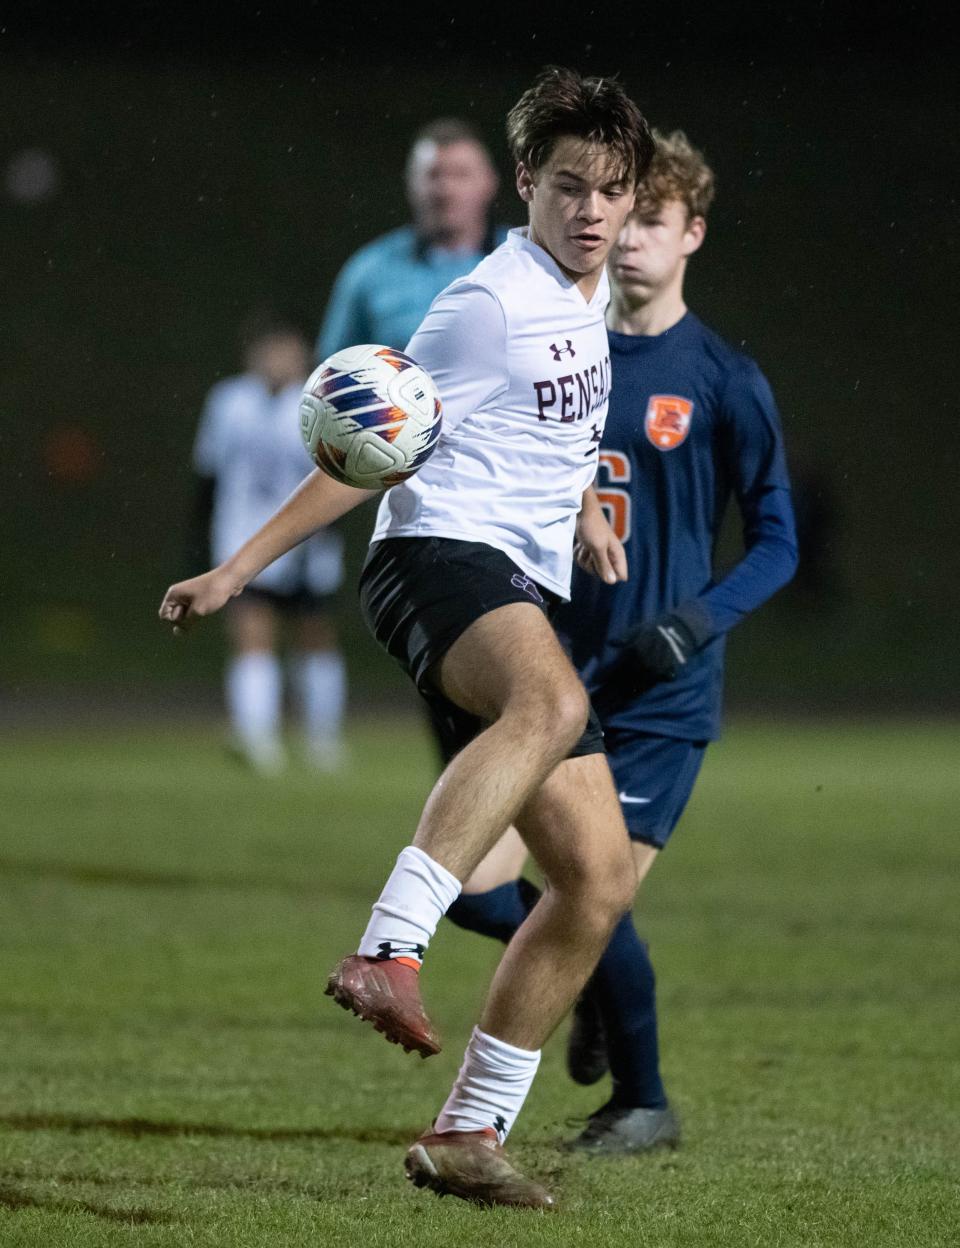 Cooper Nolen (9) takes control of the ball during the Pensacola vs Escambia boys soccer game at Escambia High School in Pensacola on Monday, Dec. 19, 2022.